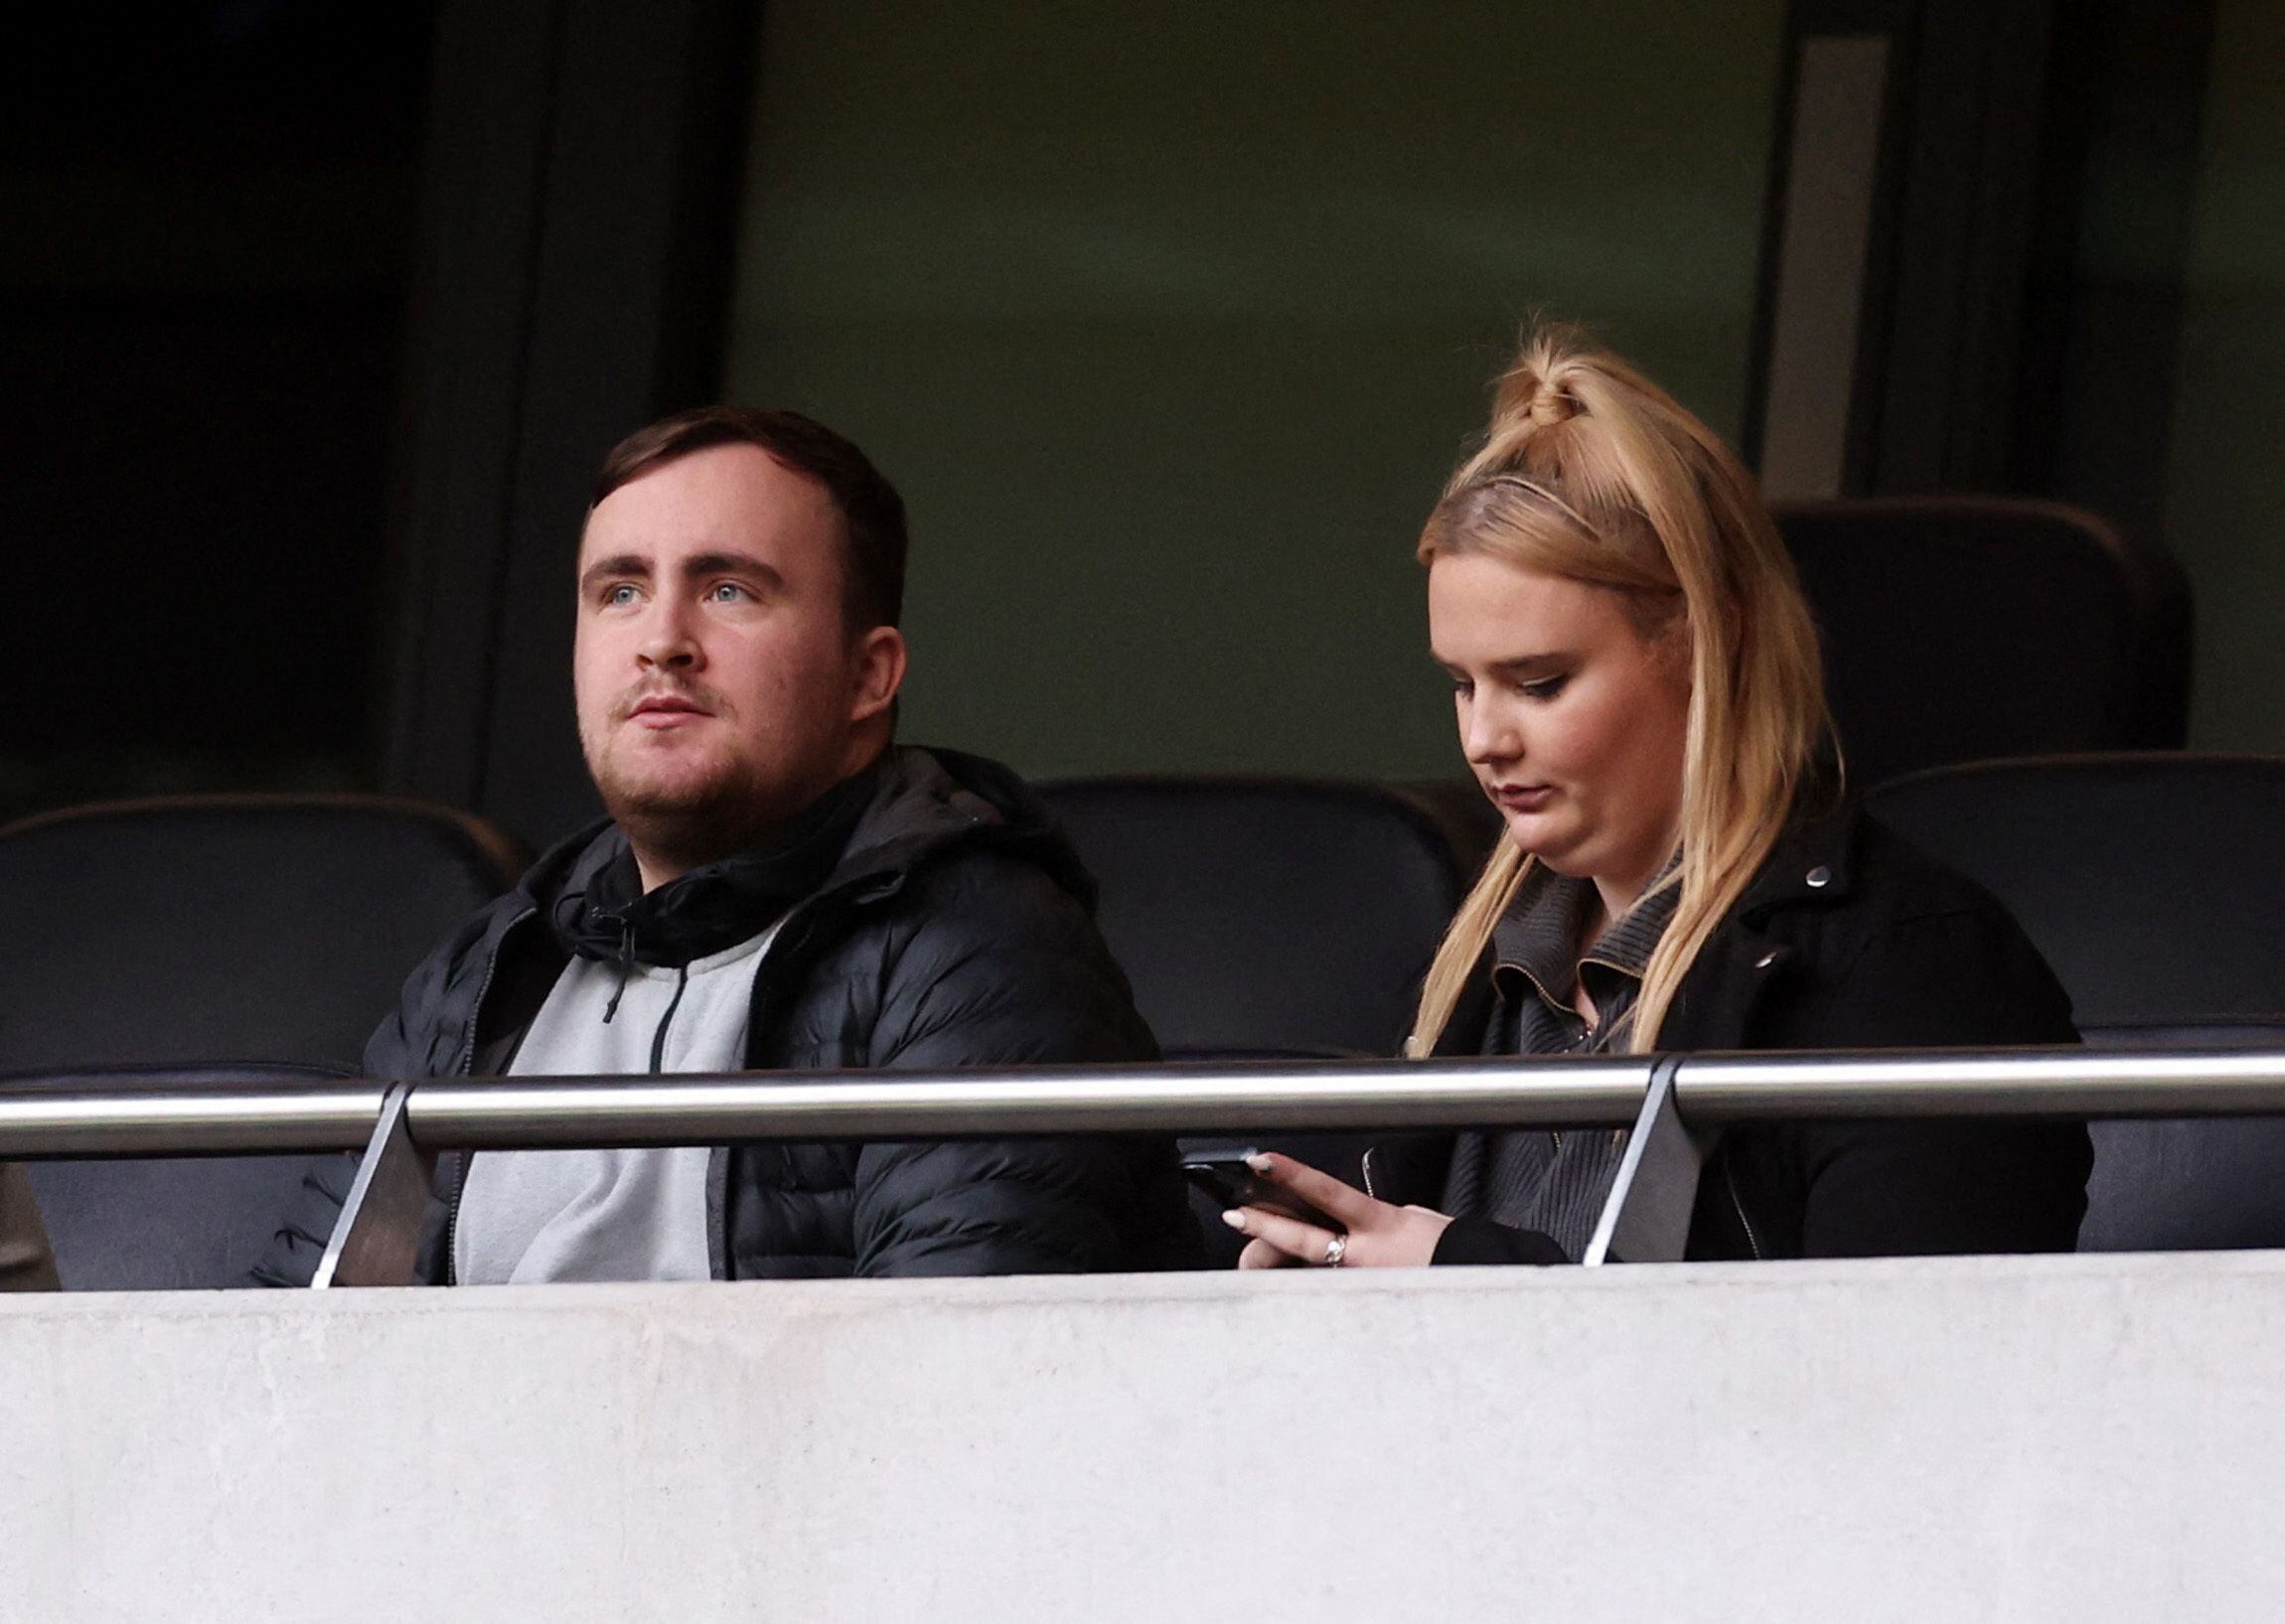 El lanzador de dardos Luke Littler y su novia en la platea del estadio de Tottenham (REUTERS/David Klein)